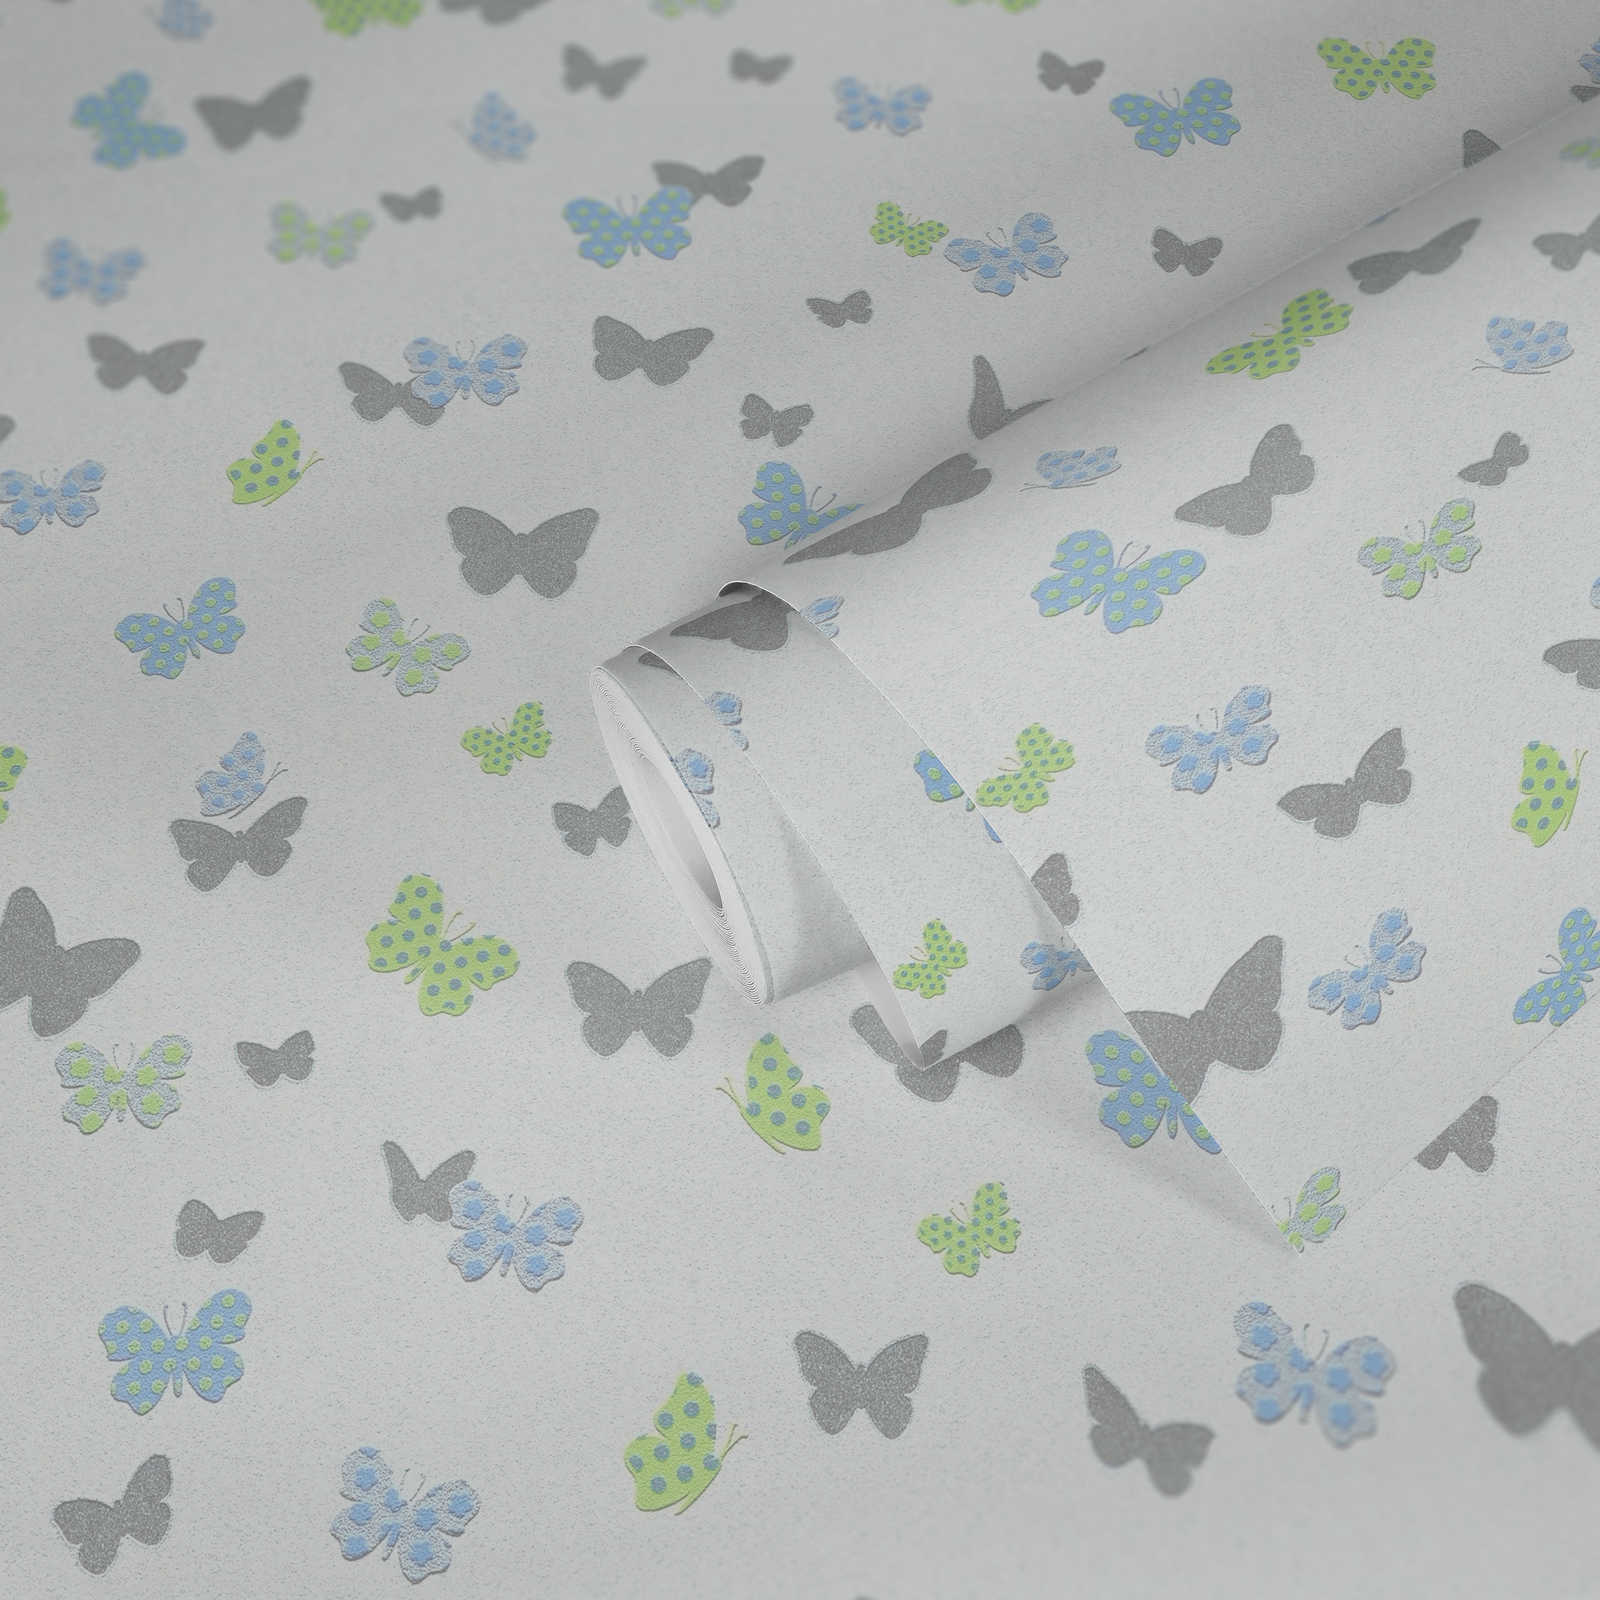             Schmetterling Tapete Kinderzimmer für Jungen – Weiß, Blau, Grau
        